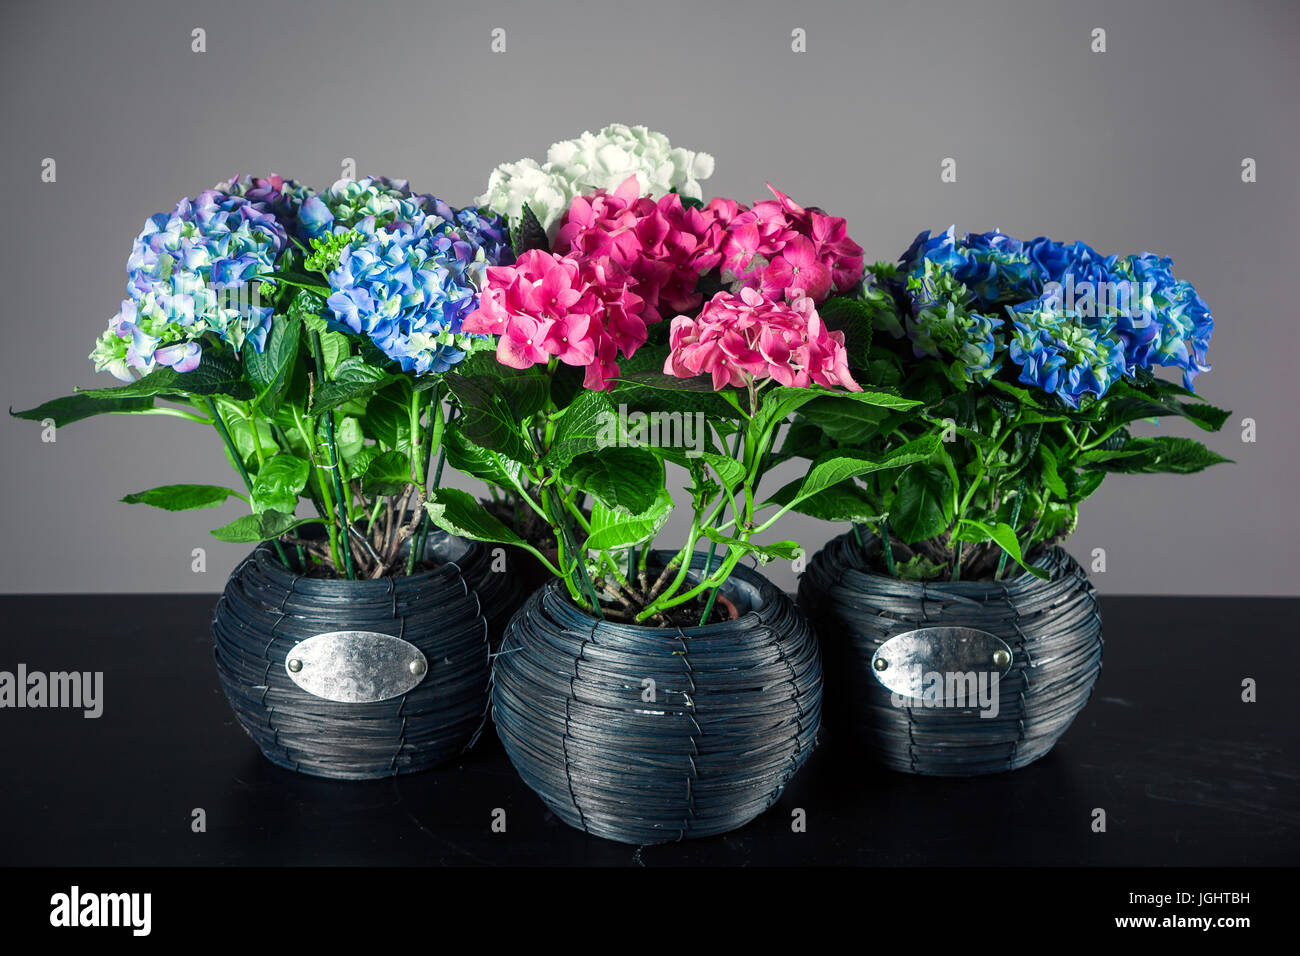 Mazzi Di Fiori Di Ortensie Quattro Vasi Con Ortensie Di Diversi Colori Su Sfondo Nero Foto Stock Alamy